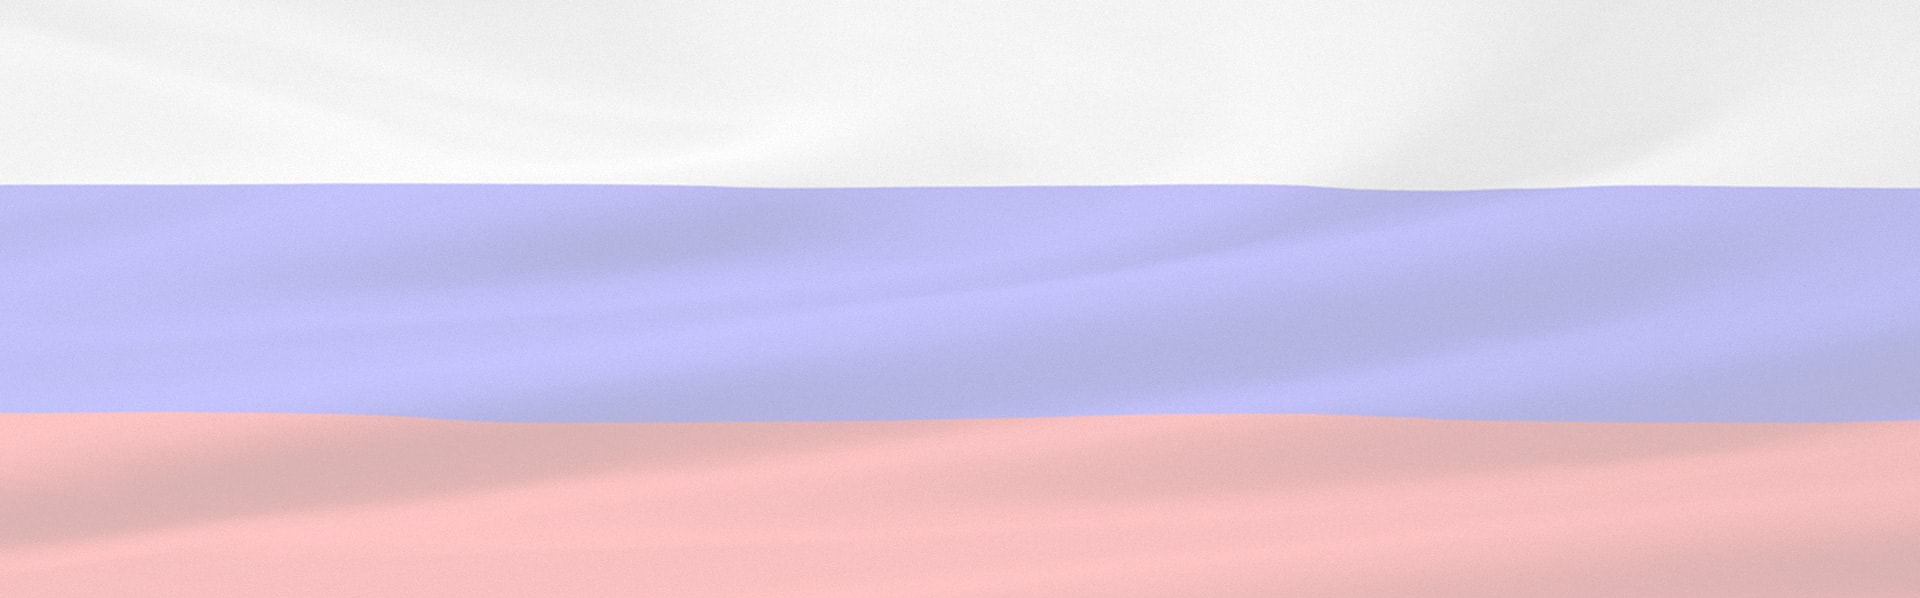 ruska zastava